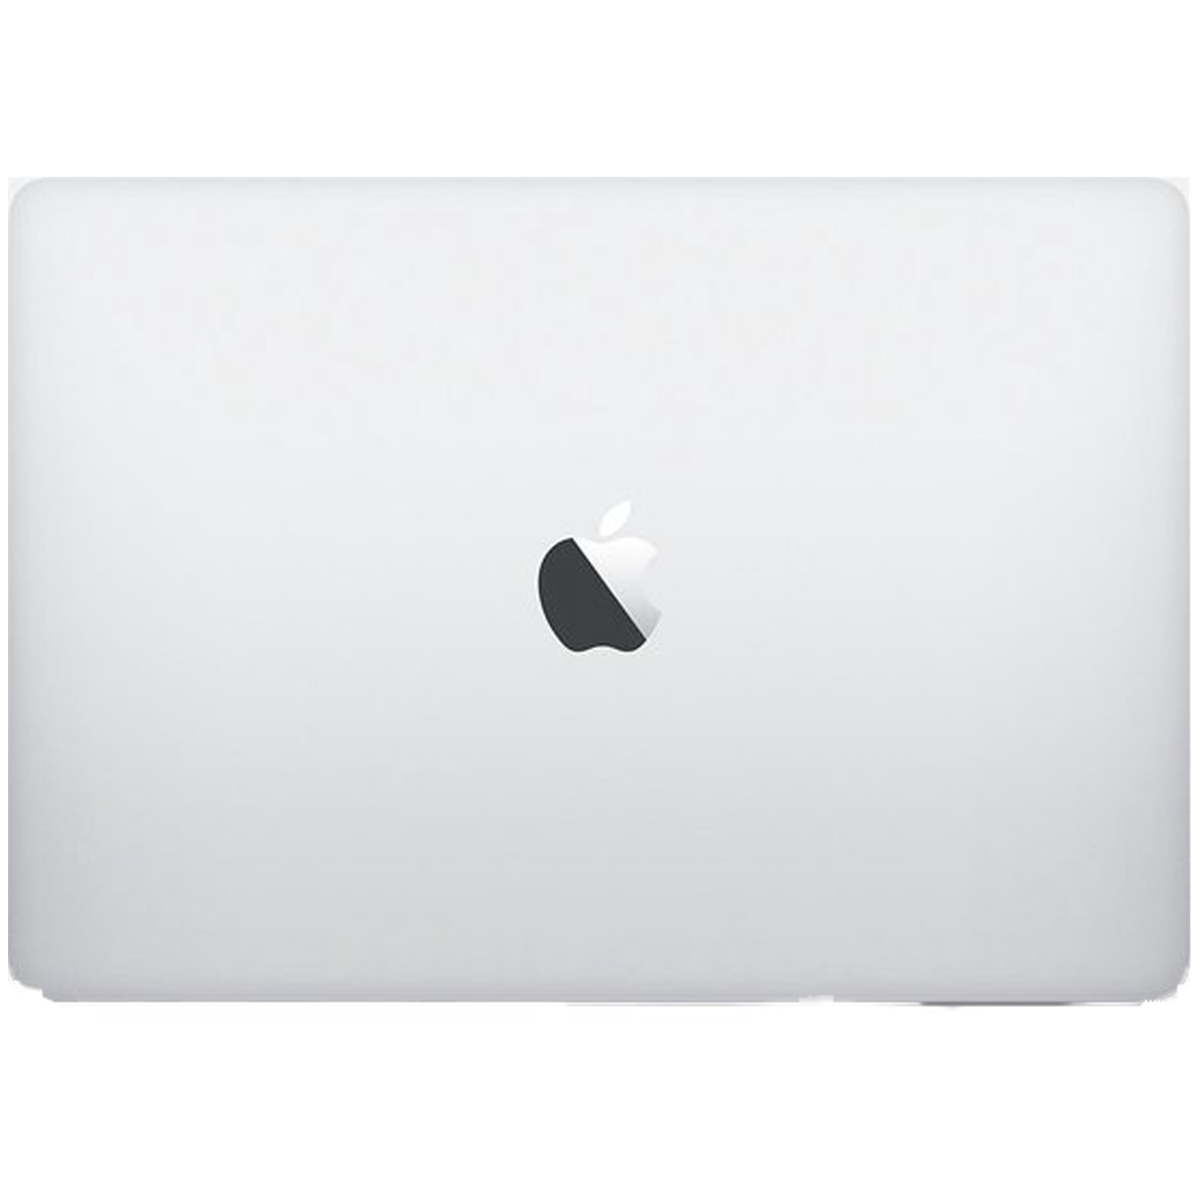 Refurbished MacBook Pro Touchbar 13" i5 2.9 Ghz 8GB 256GB - test-product-media-liquid1